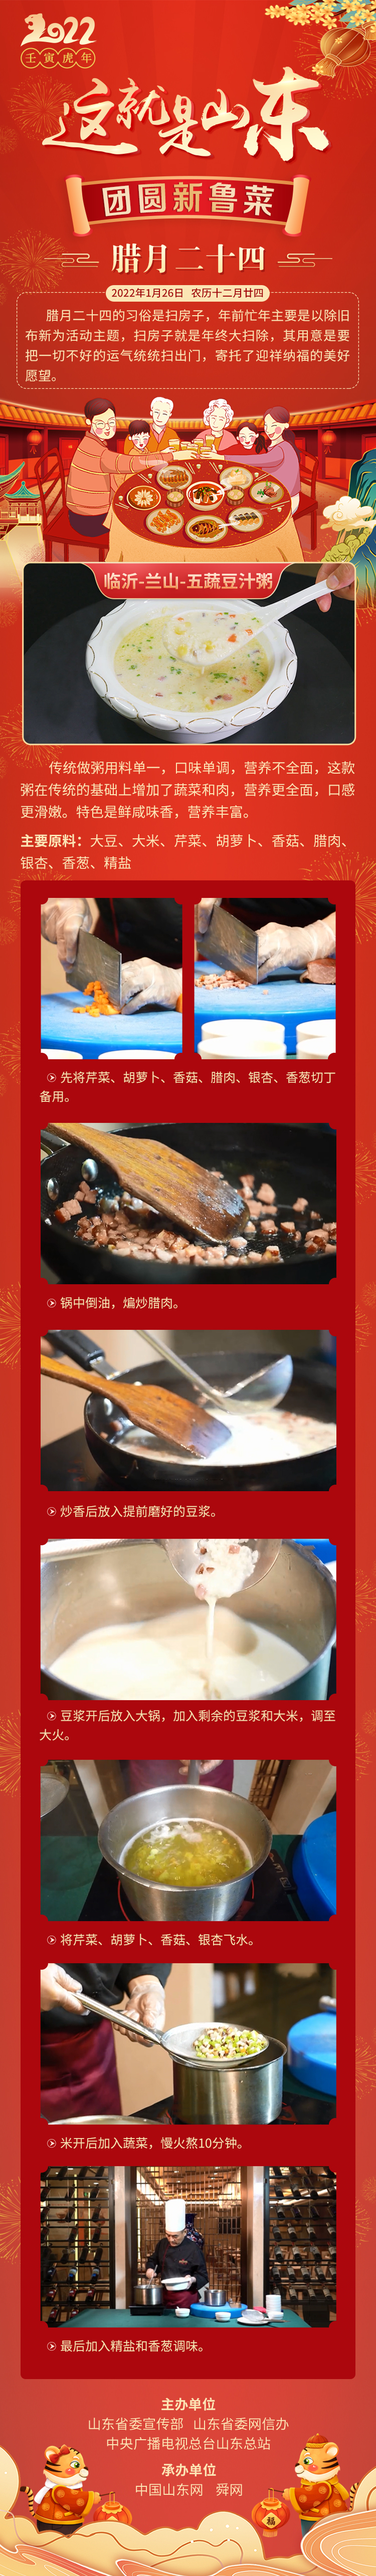 這就是山東·團圓新魯菜——臨沂-蘭山-五蔬豆汁粥